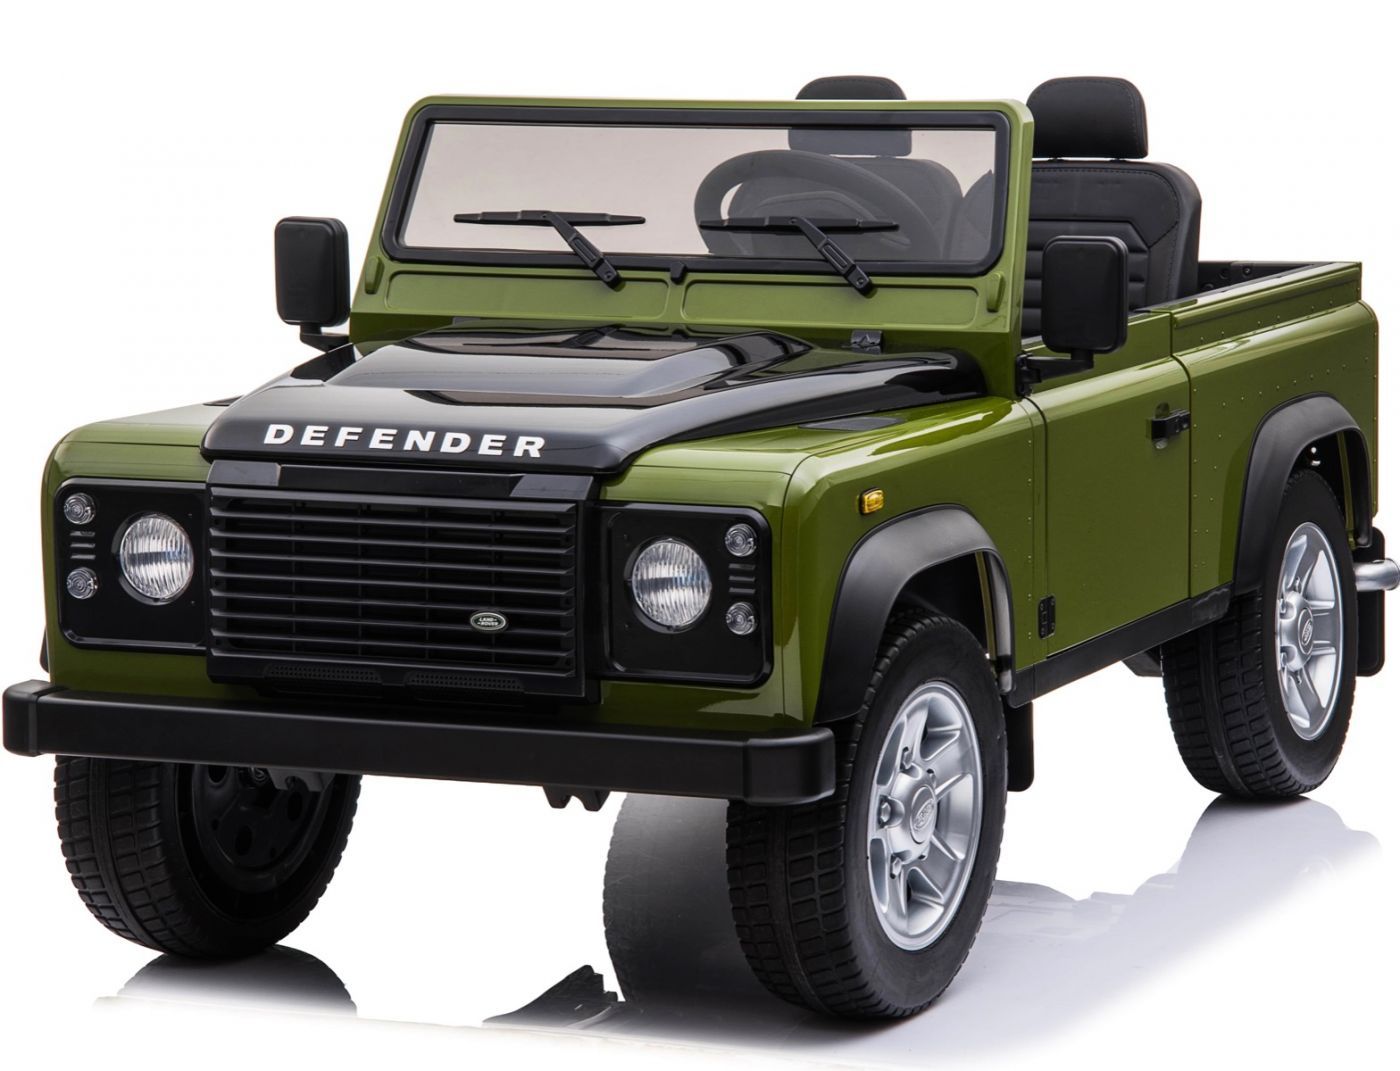 licensed-land-rover-defender-24v-4wd-ride-on-green-.jpg